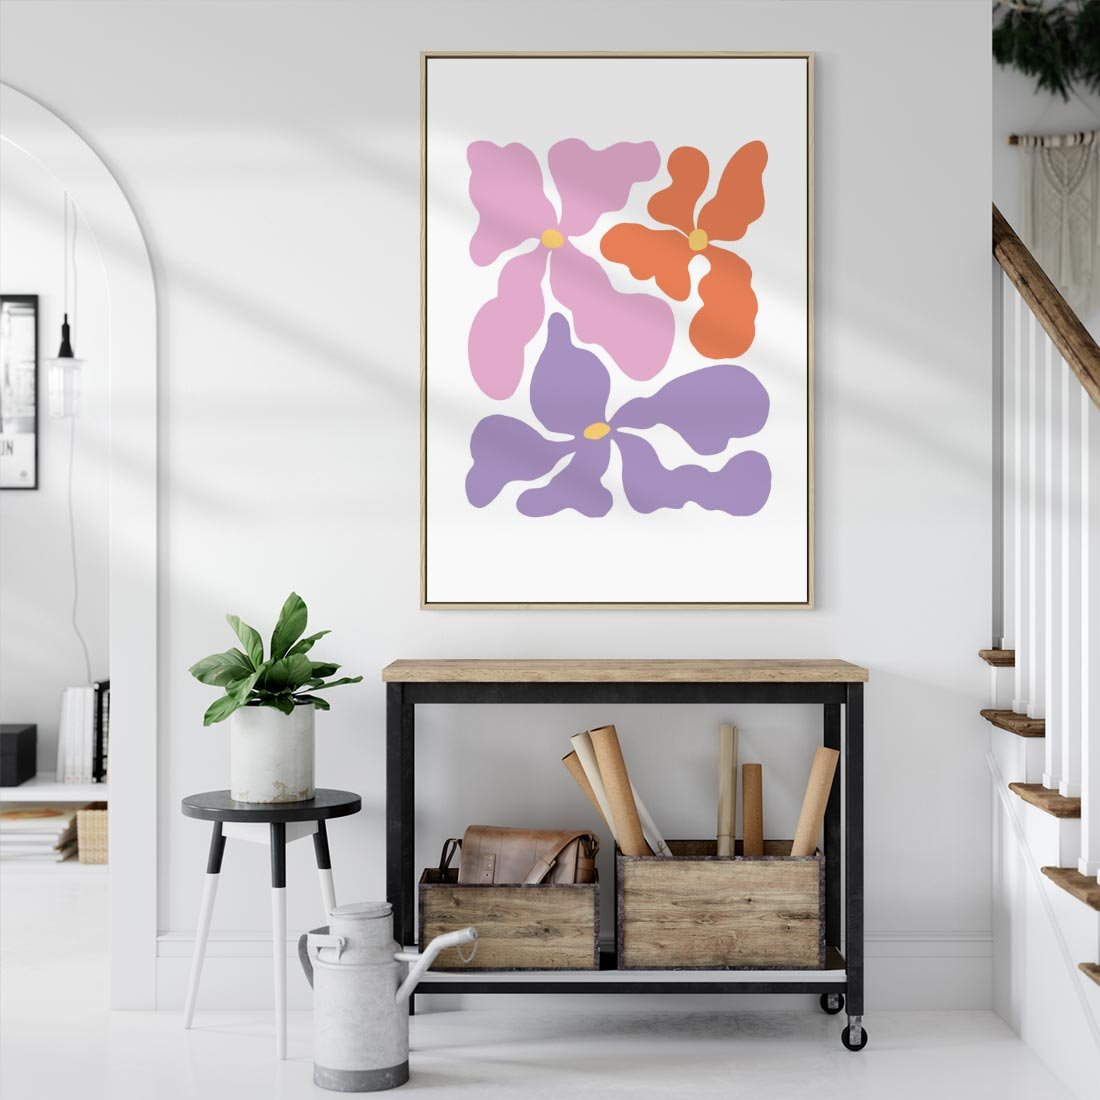 Obraz w ramie 50x70 - Bezgraniczne Wibracje - abstrakcyjne kolorowe kwiaty, minimlizm - rama drewno